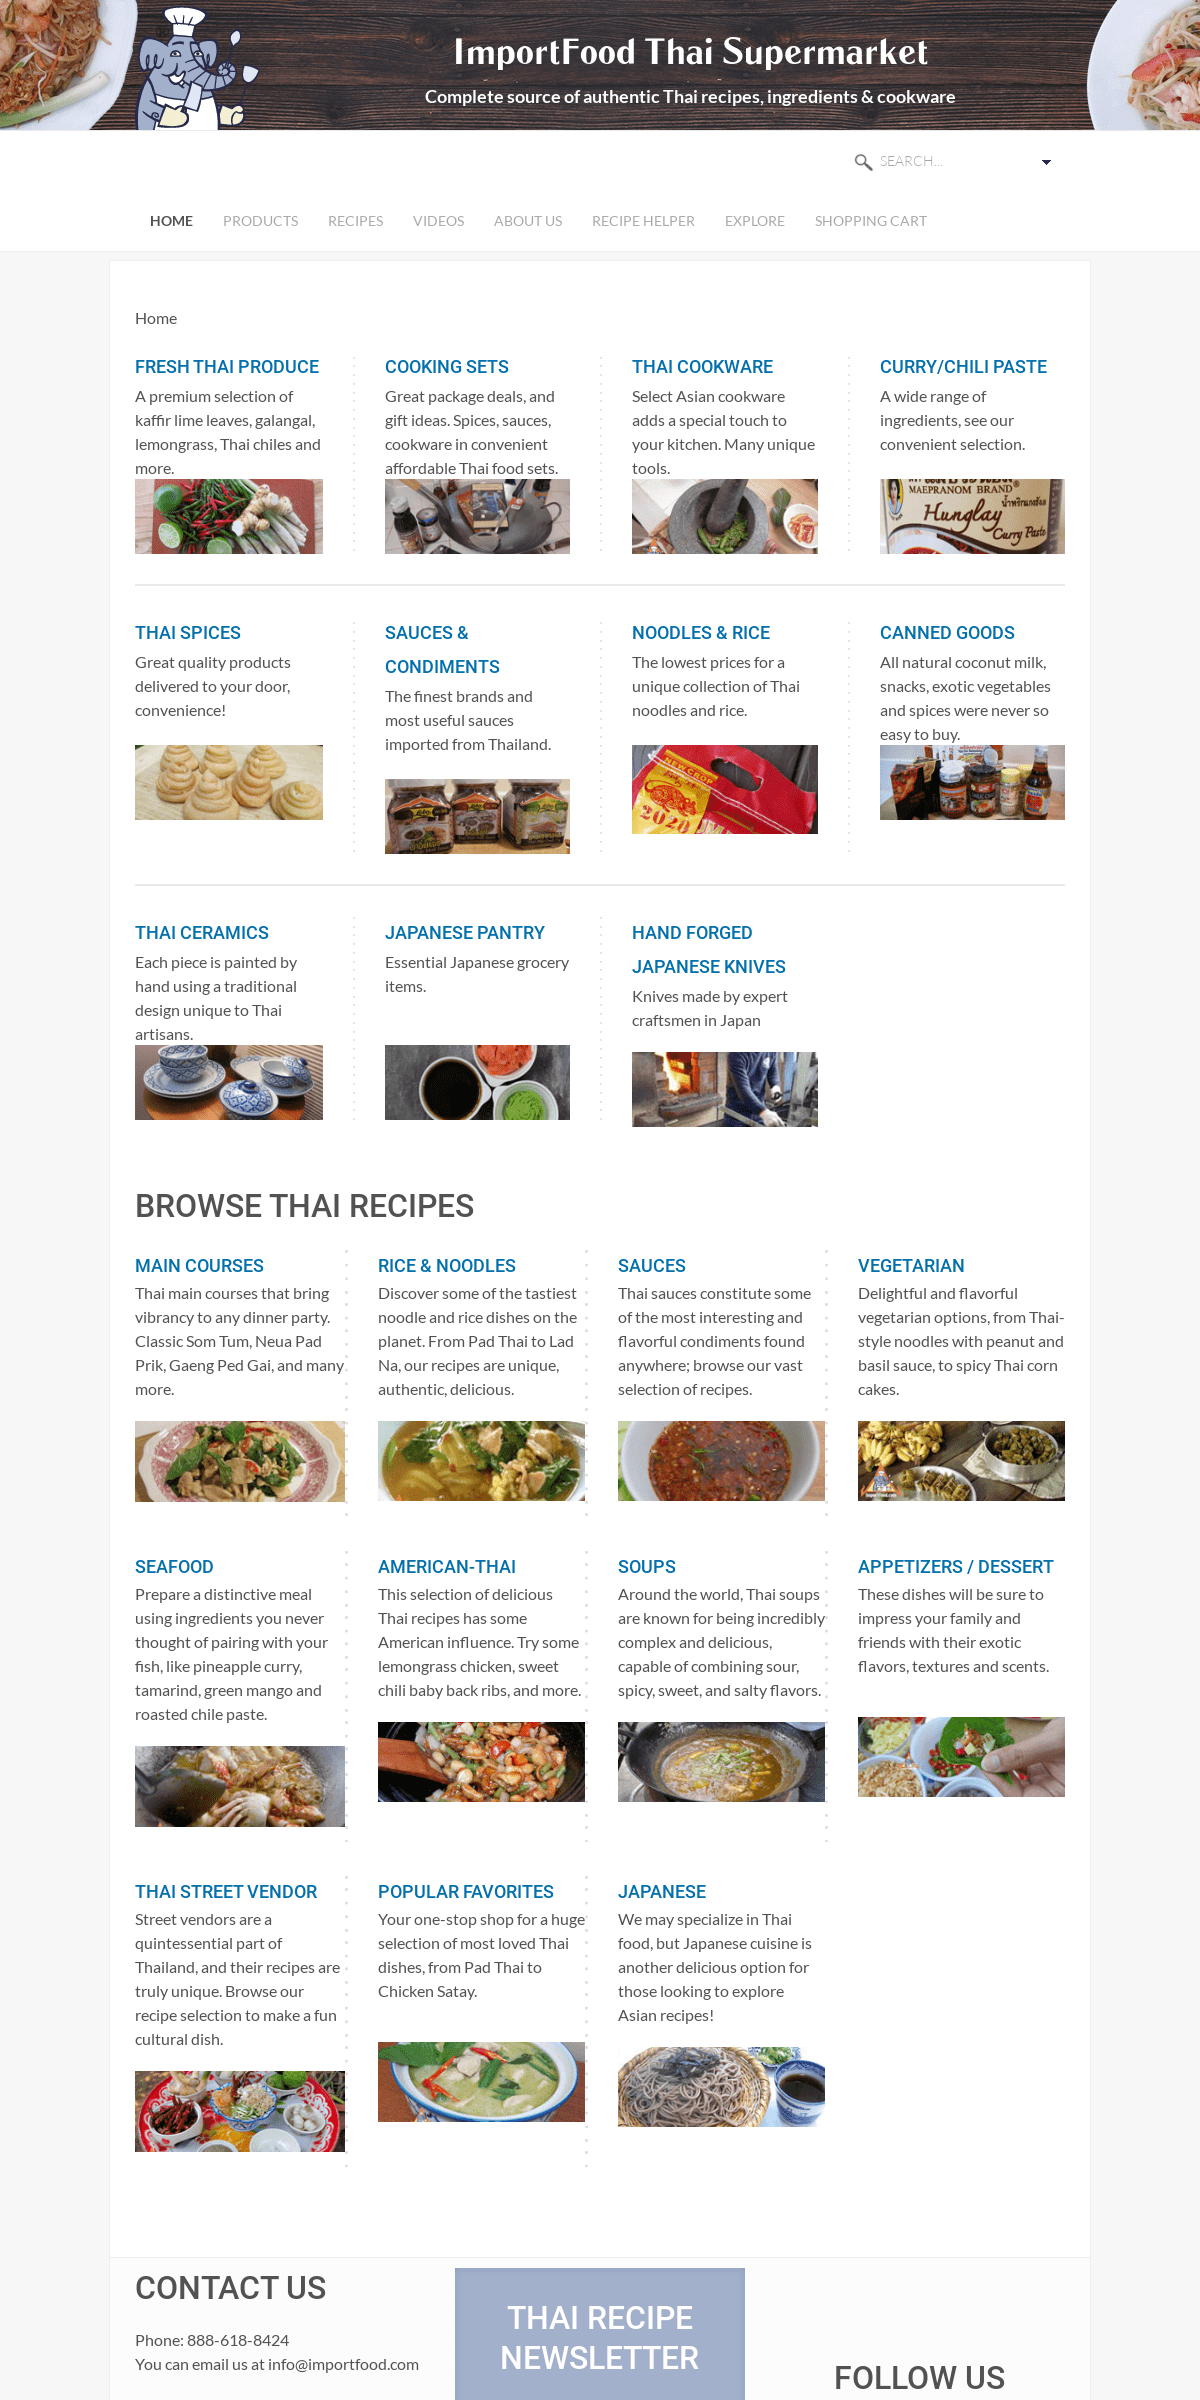 A complete backup of importfood.com